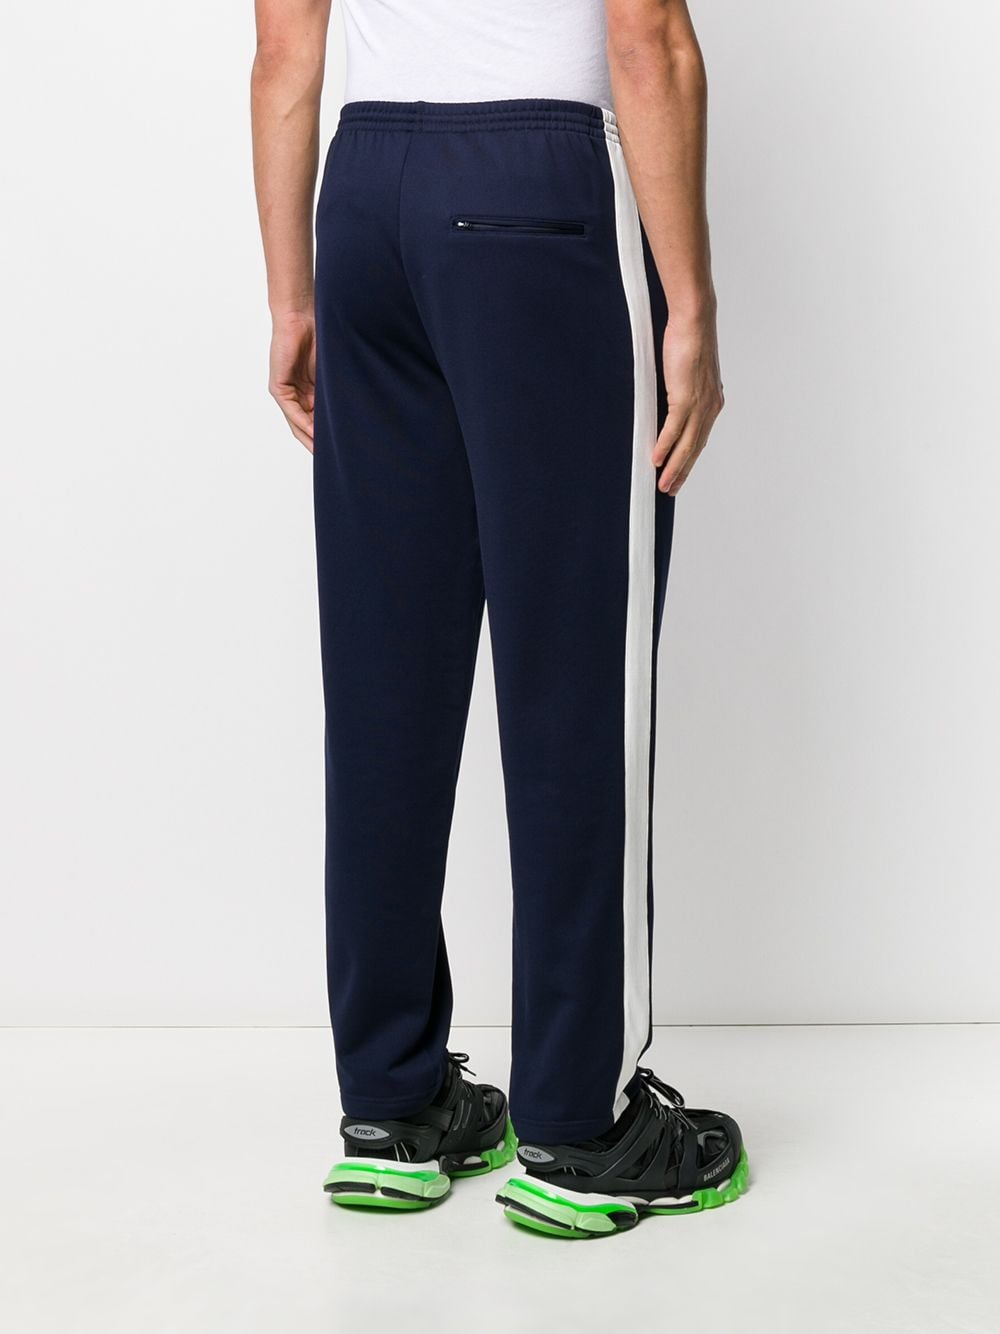 фото Balenciaga спортивные брюки с лампасами